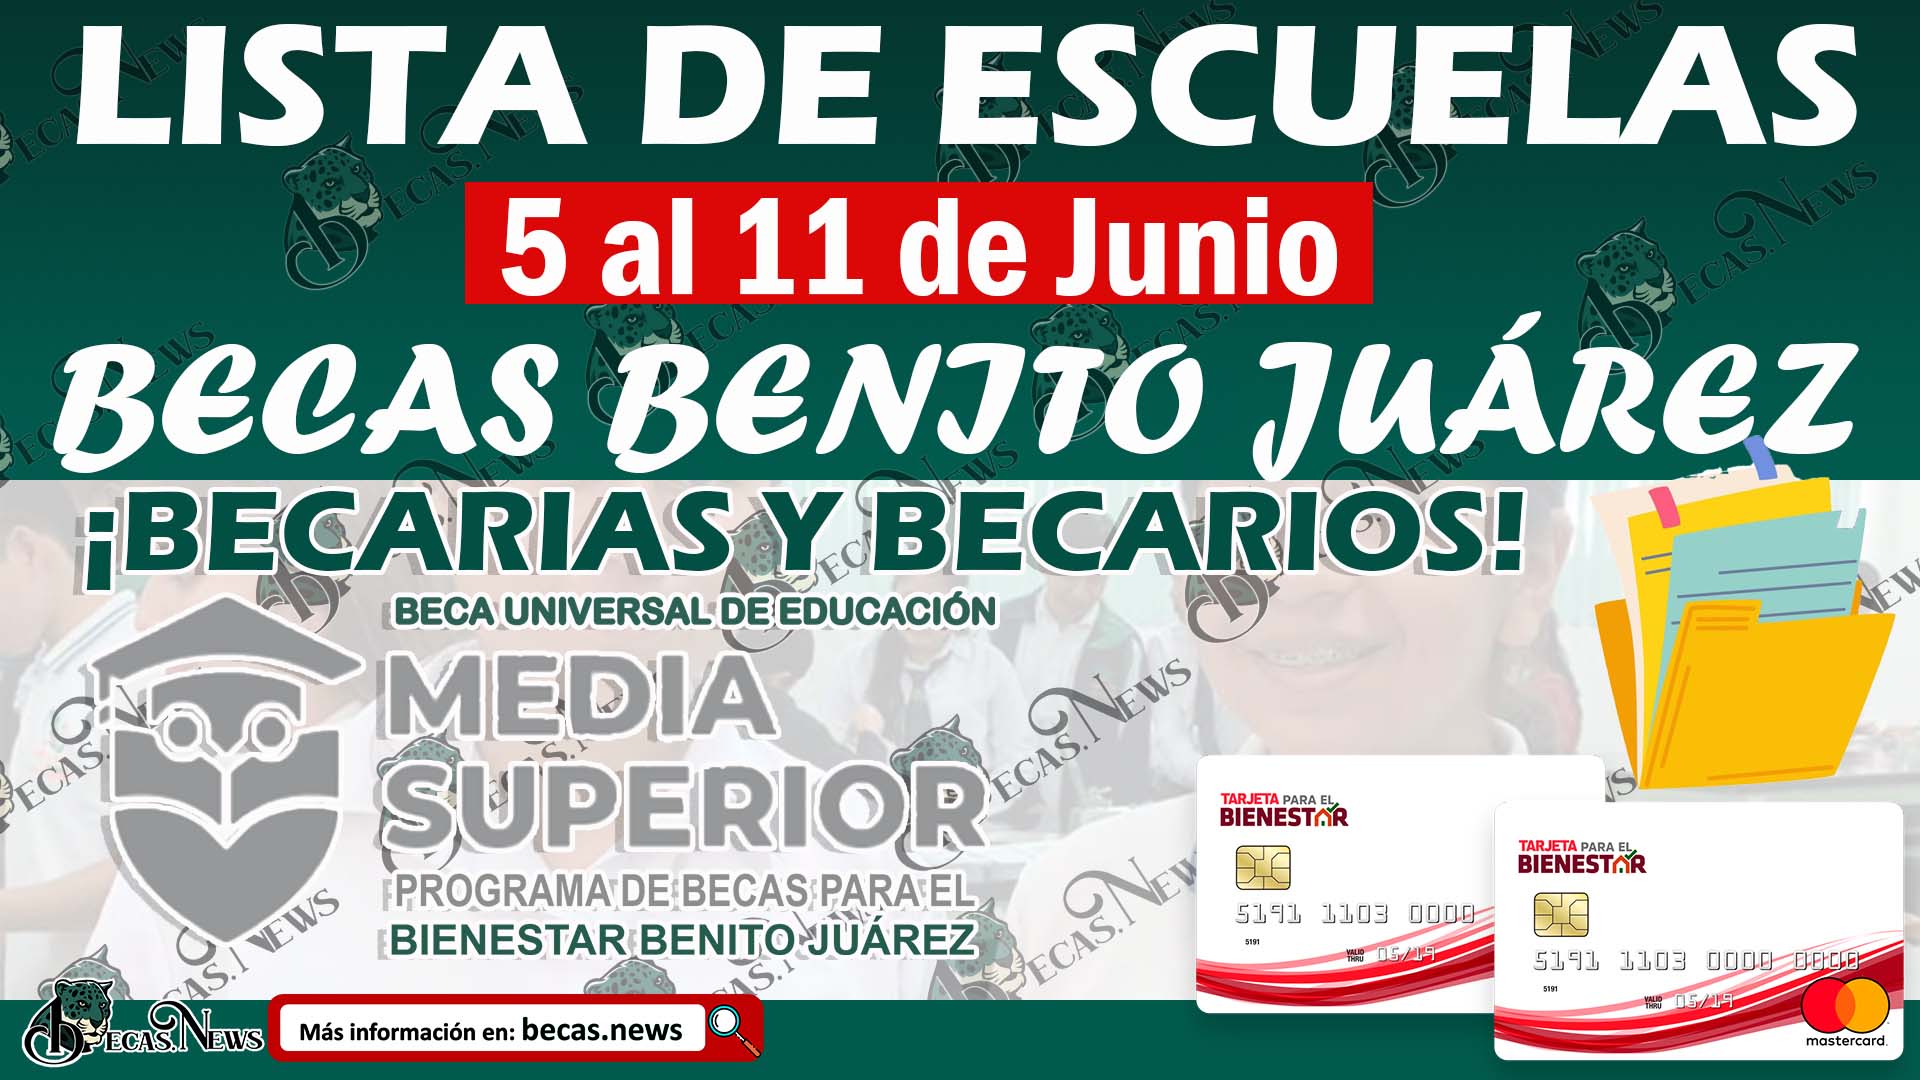 Becas Benito Juárez; Lista de Escuelas con atención entrega de Tarjeta Bienestar 5 al 11 de junio